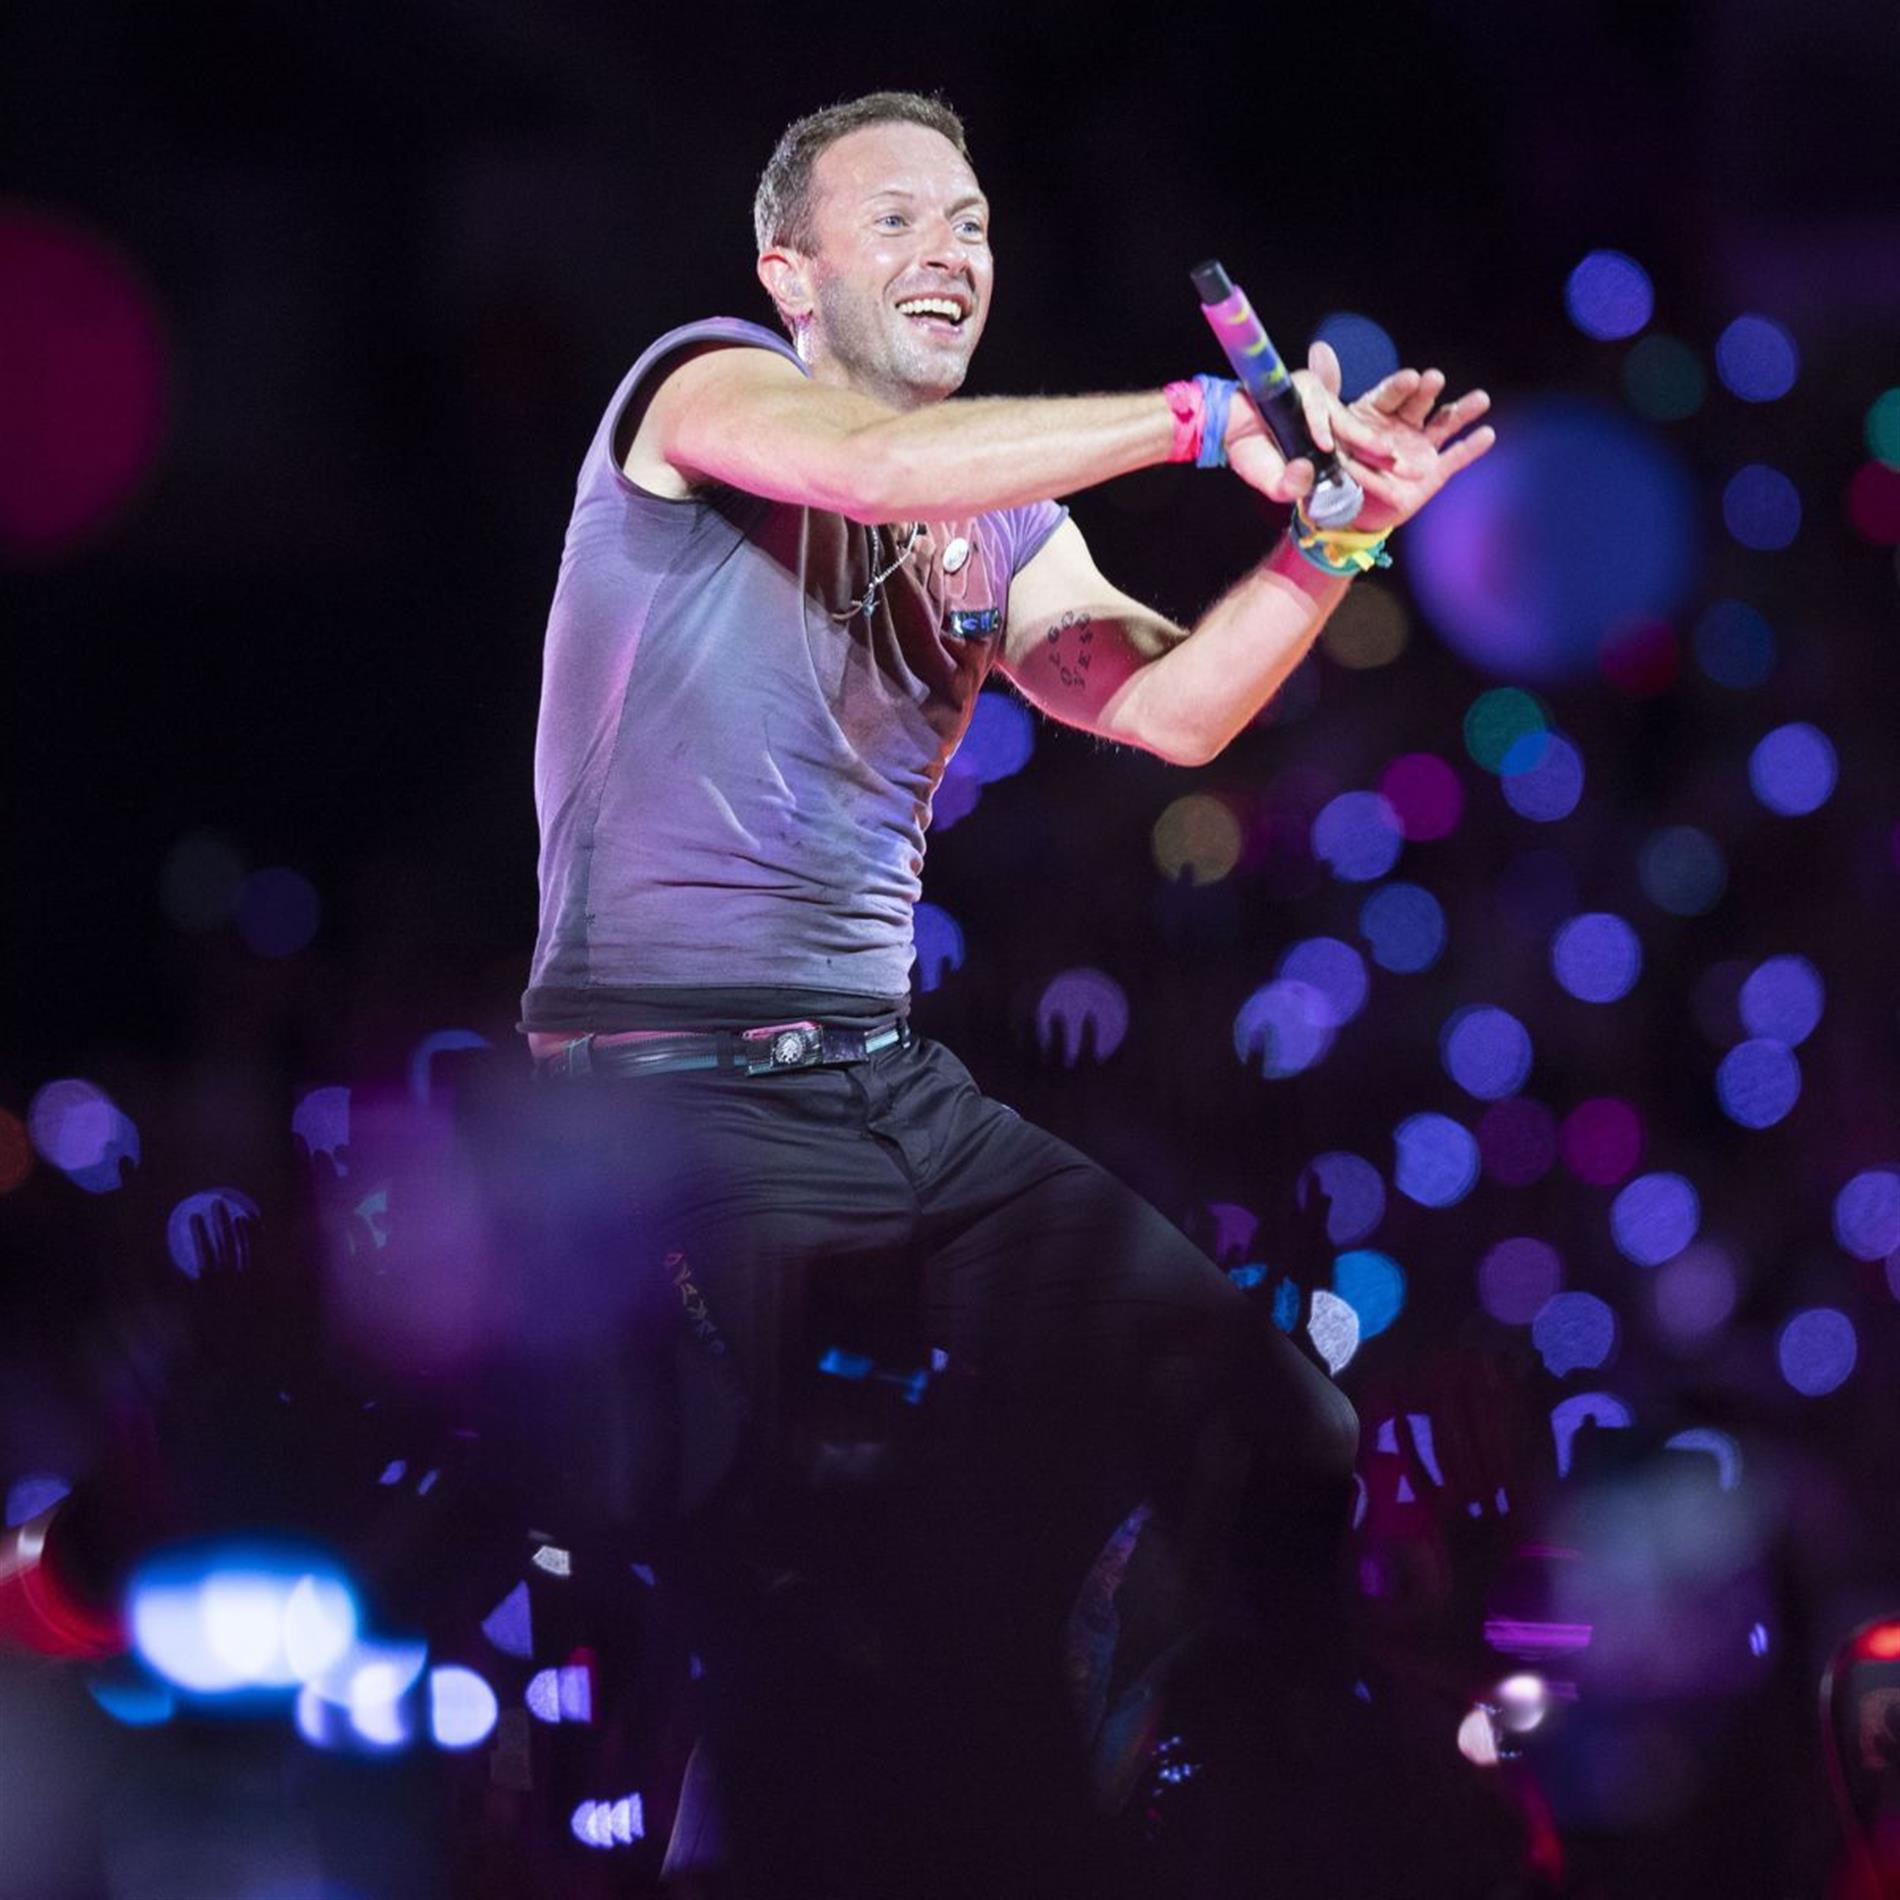 Η έκπληξη της βραδιάς από τους Coldplay: Αυτόν τον Έλληνα καλλιτέχνη ανέβασαν στη σκηνή (βίντεο)
